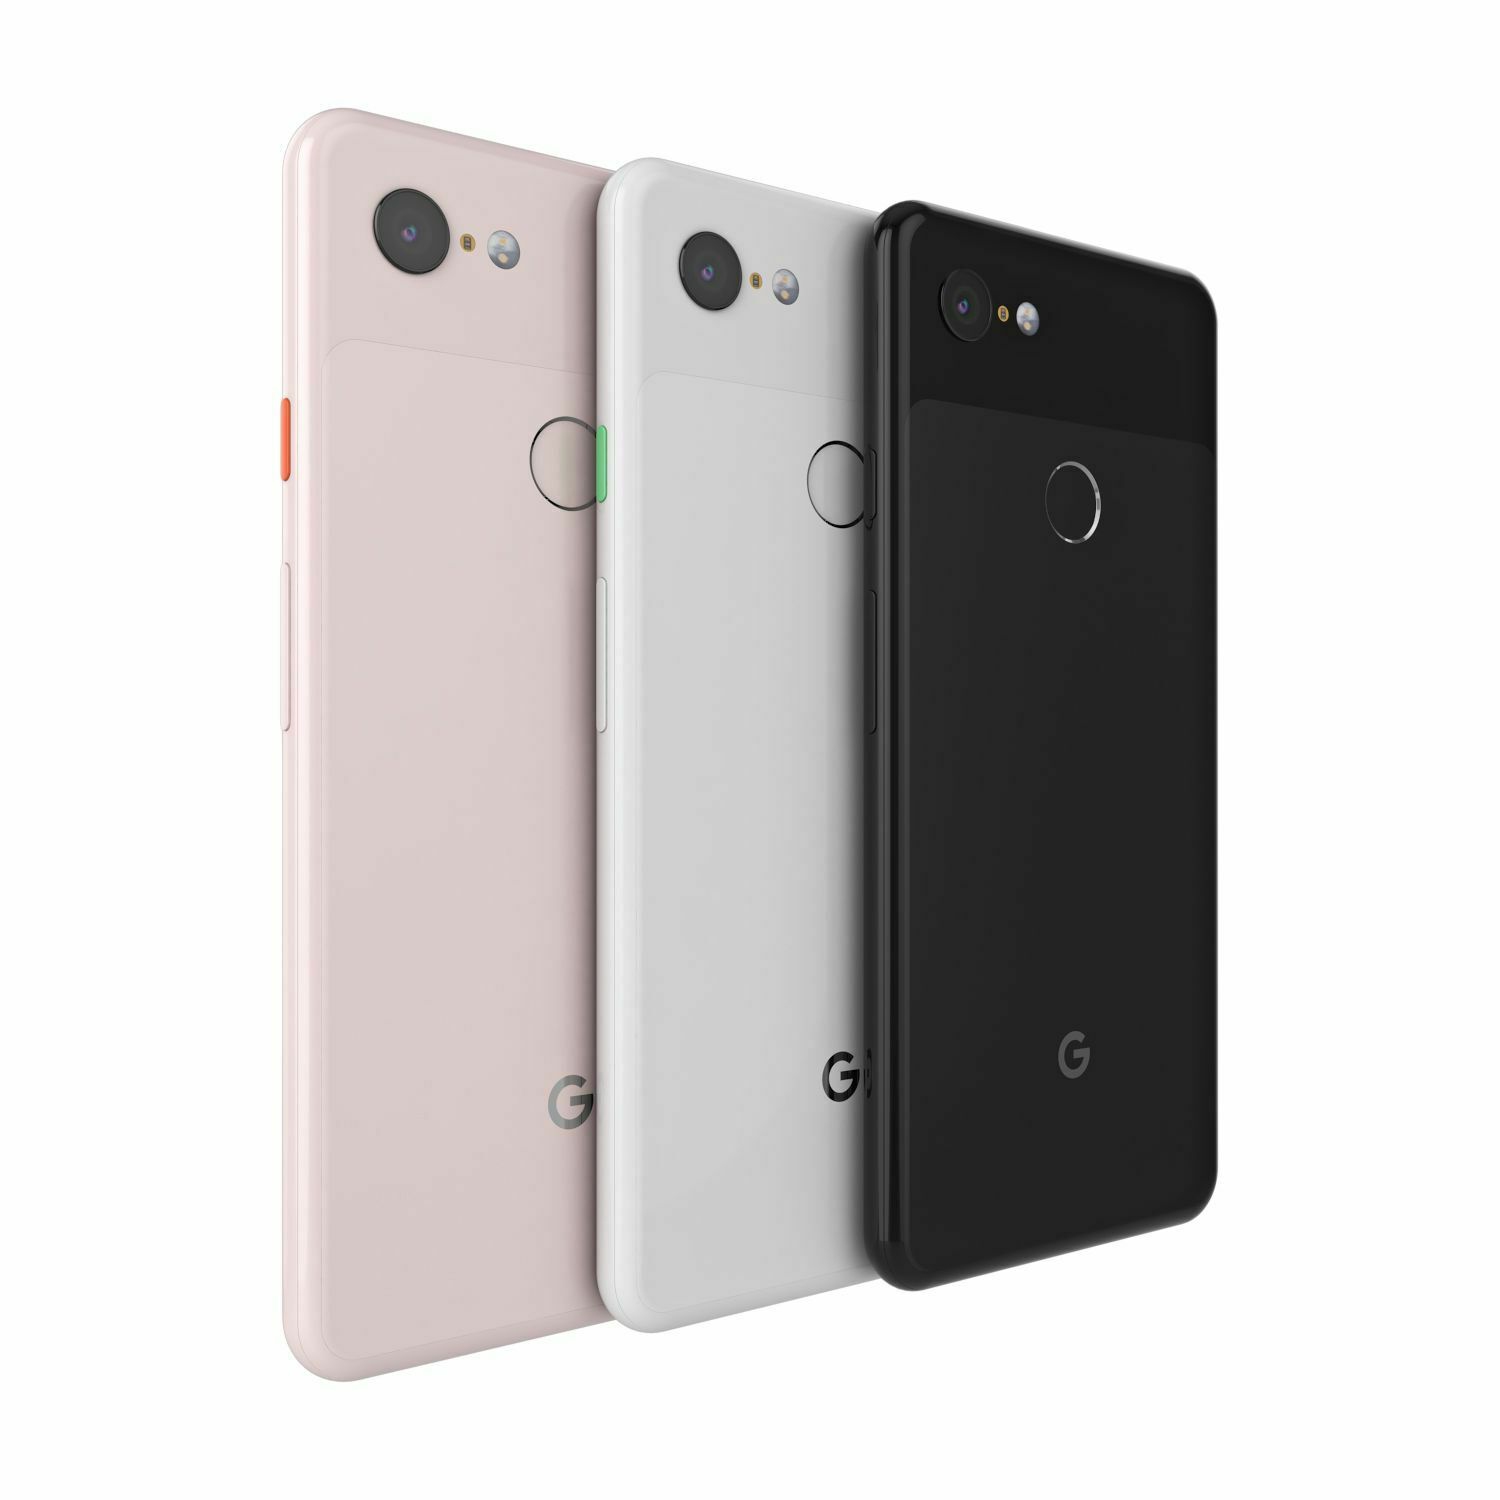 Google Pixel 3 XL 128GB Smartphone - Just Black - Unlocked - New